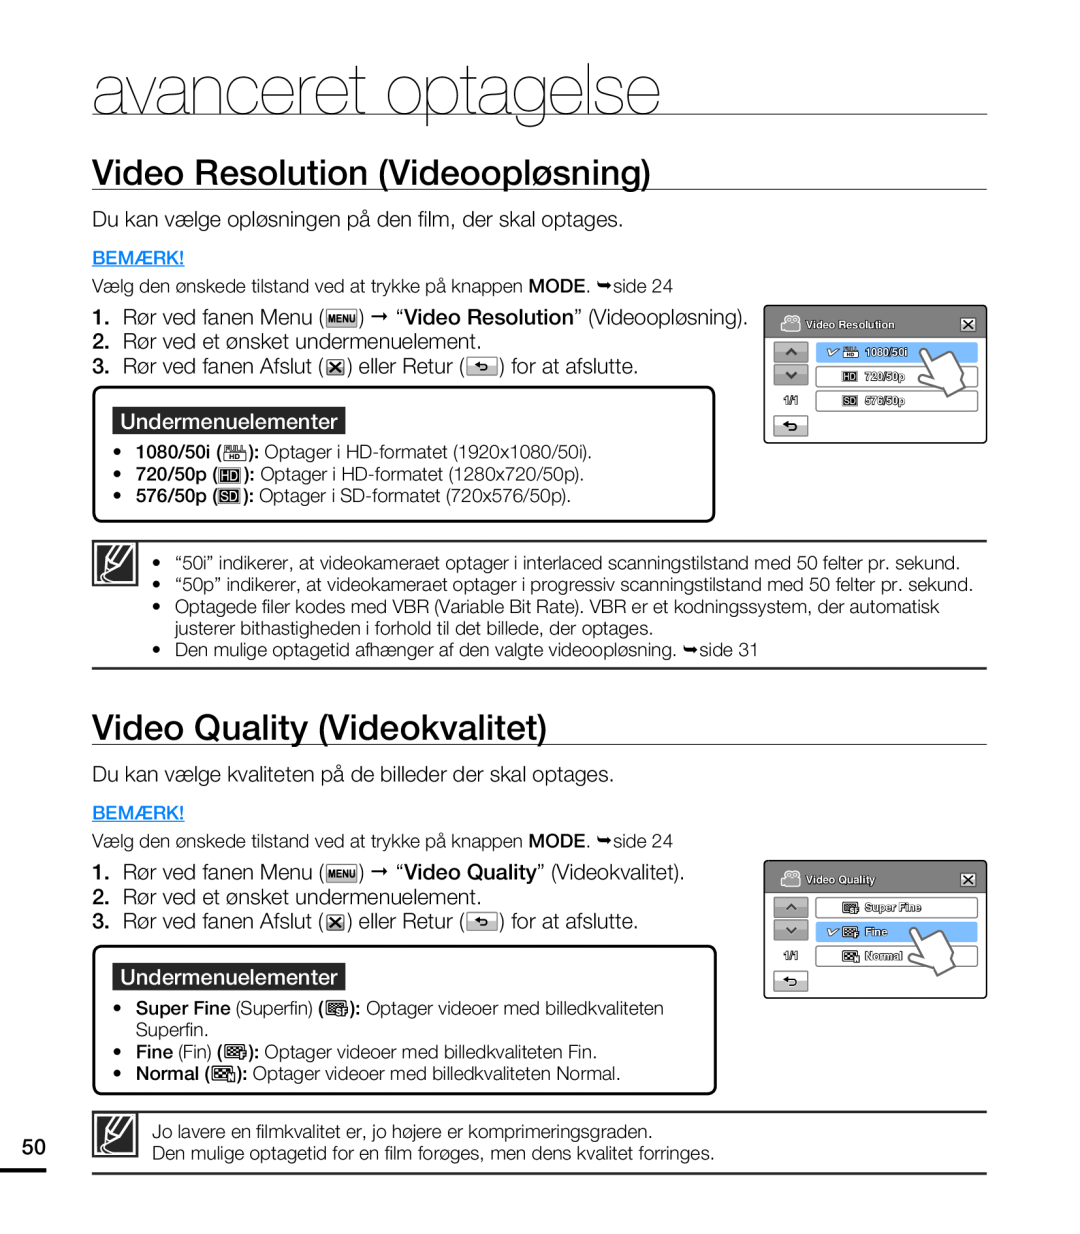 Samsung HMX-T10WP/EDC manual Video Resolution Videoopløsning, Video Quality Videokvalitet, avanceret optagelse, Bemærk 